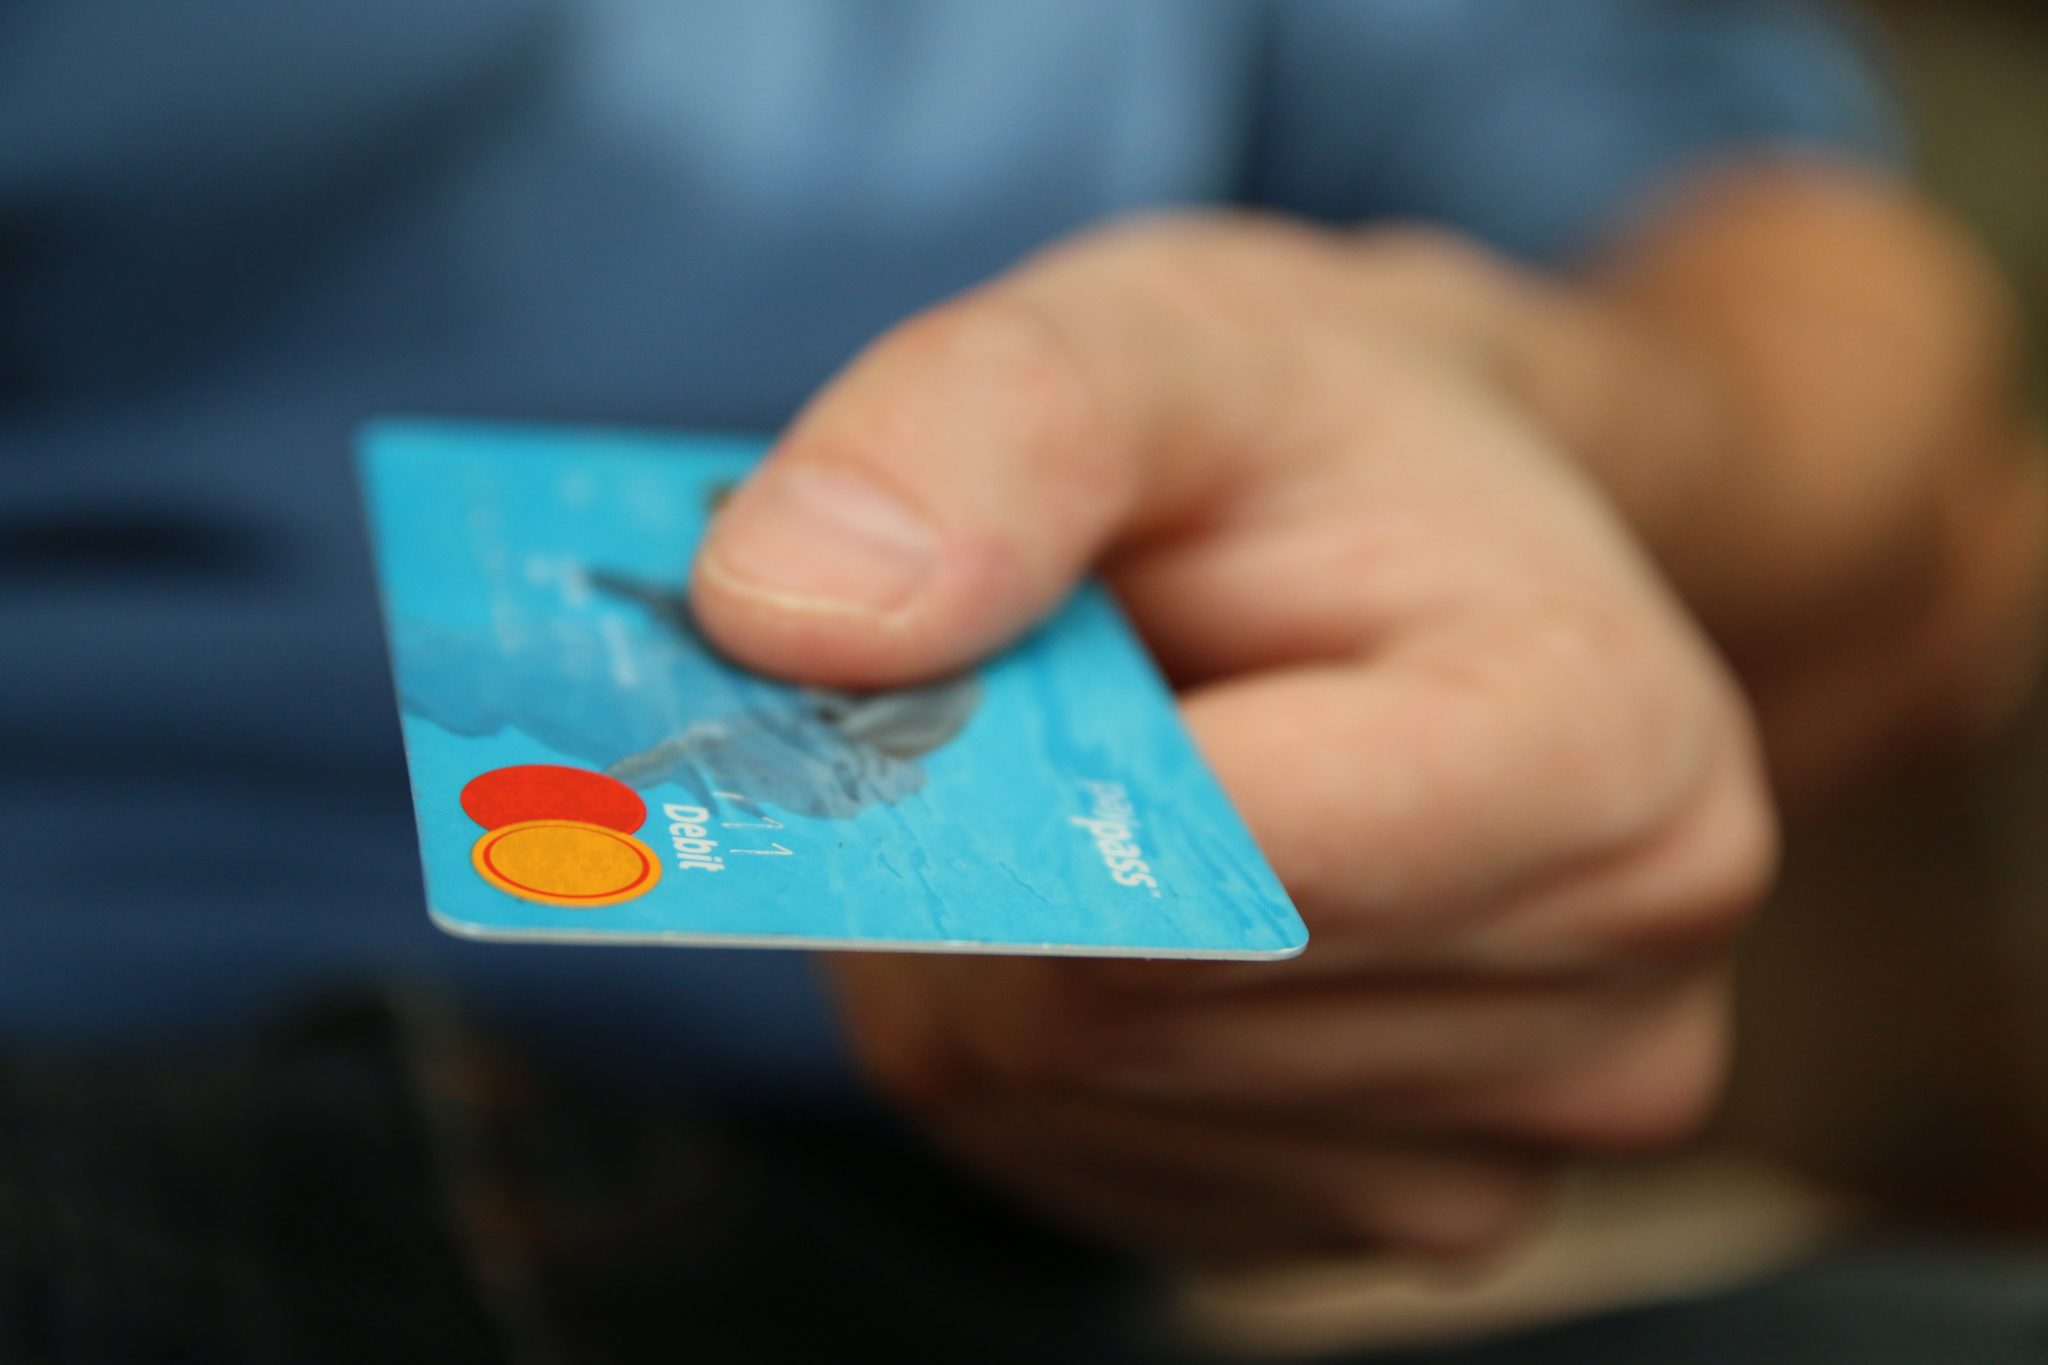 Contact Lost Stolen Debit Card